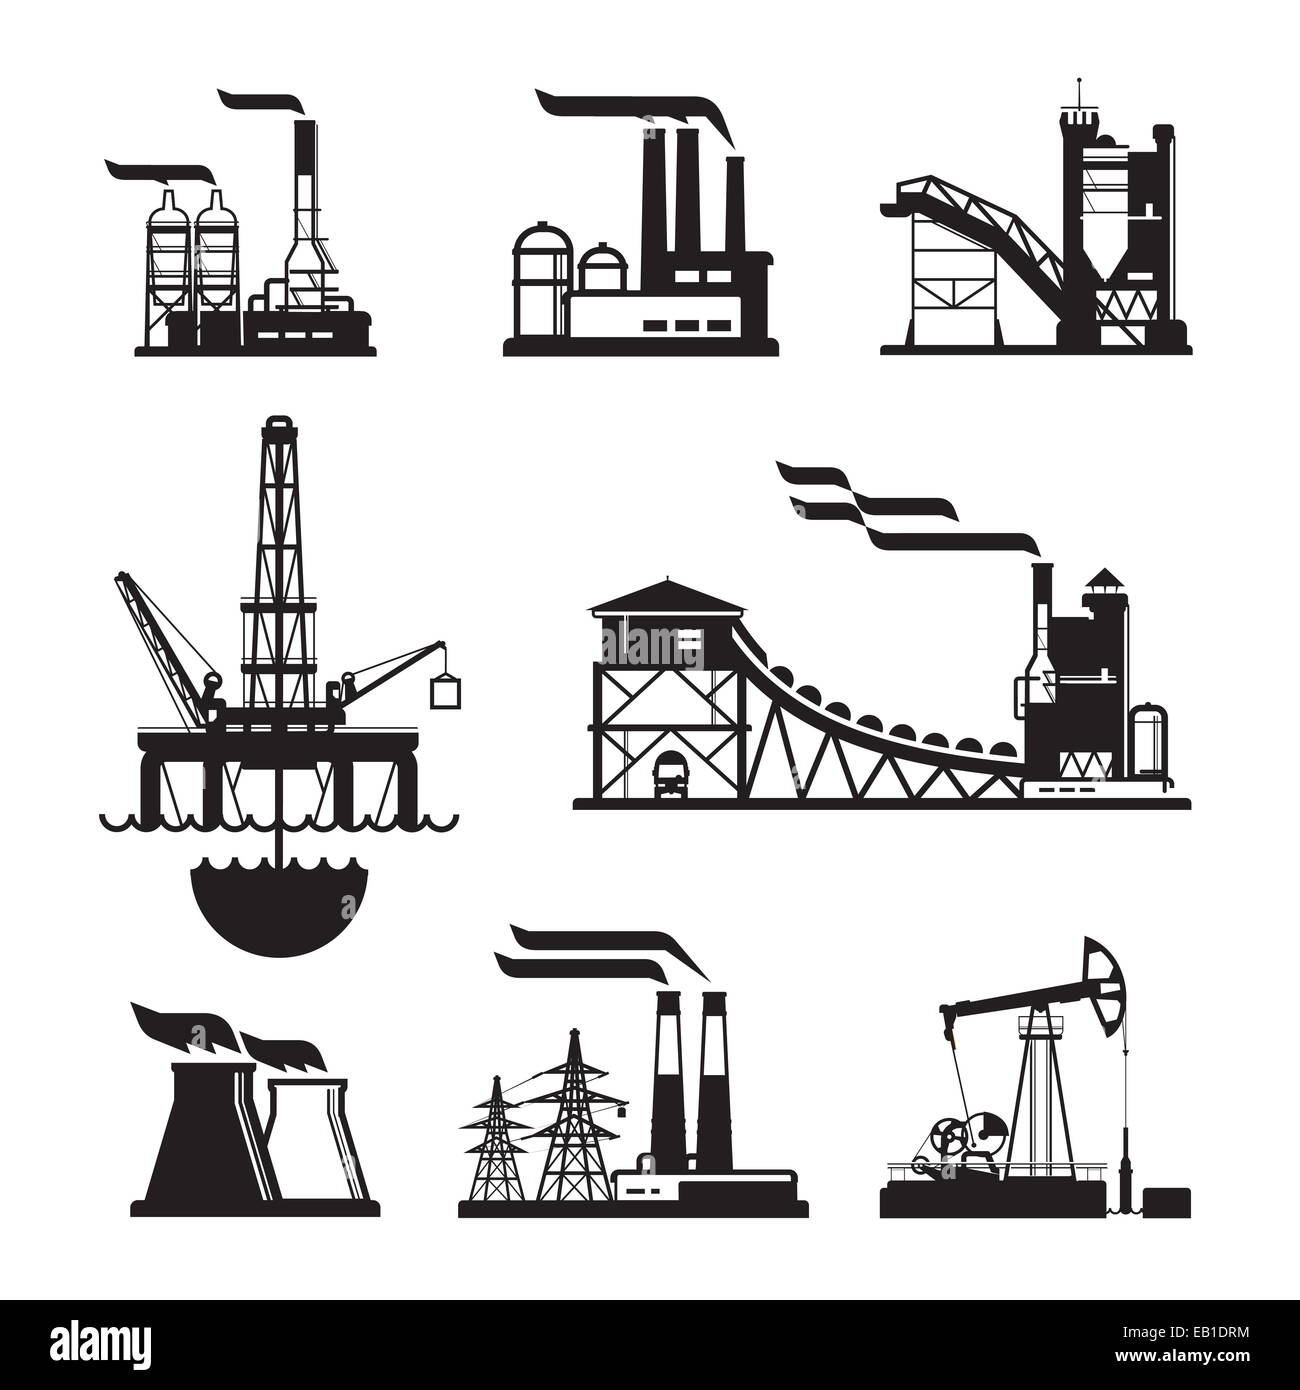 Vektor-schwarze Fabrik Symbole auf grau gesetzt. Fabrik, Kraftwerke und Industriebauten Stockfoto